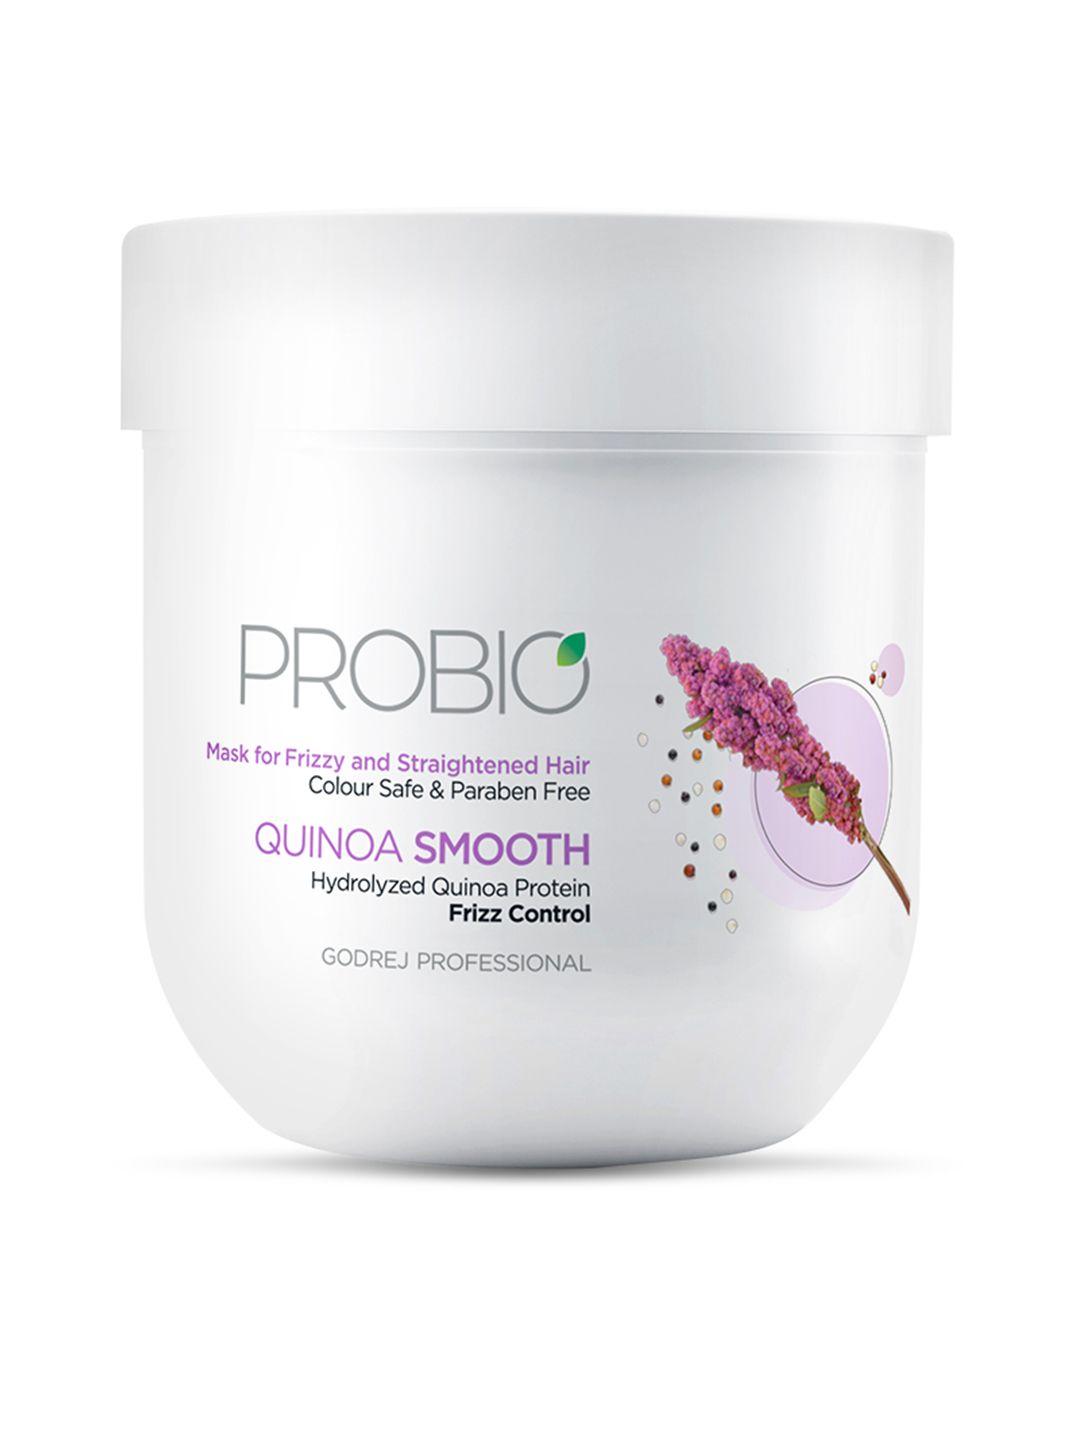 godrej professional probio quinoa smooth mask for frizz control - 200 g